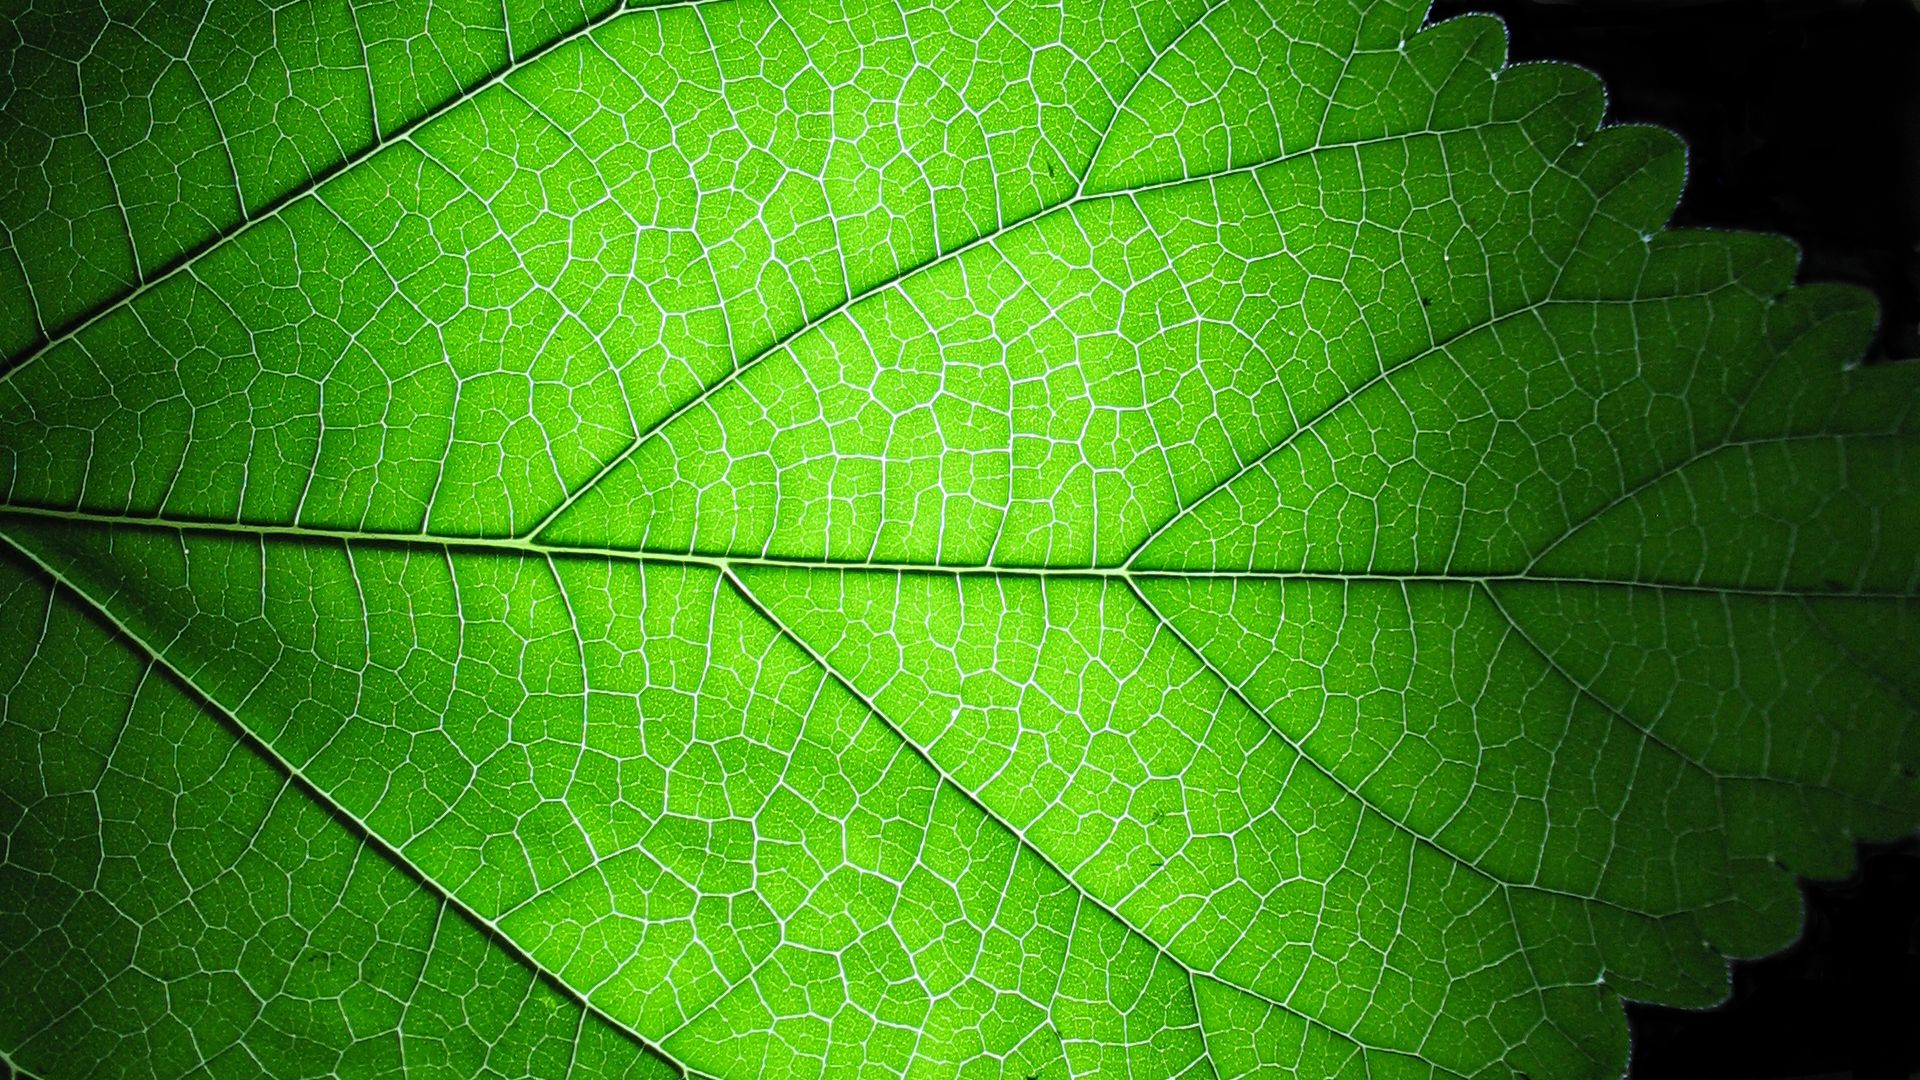 leaf structure closeup | Agnostic Stole Source Images | Pinterest ...